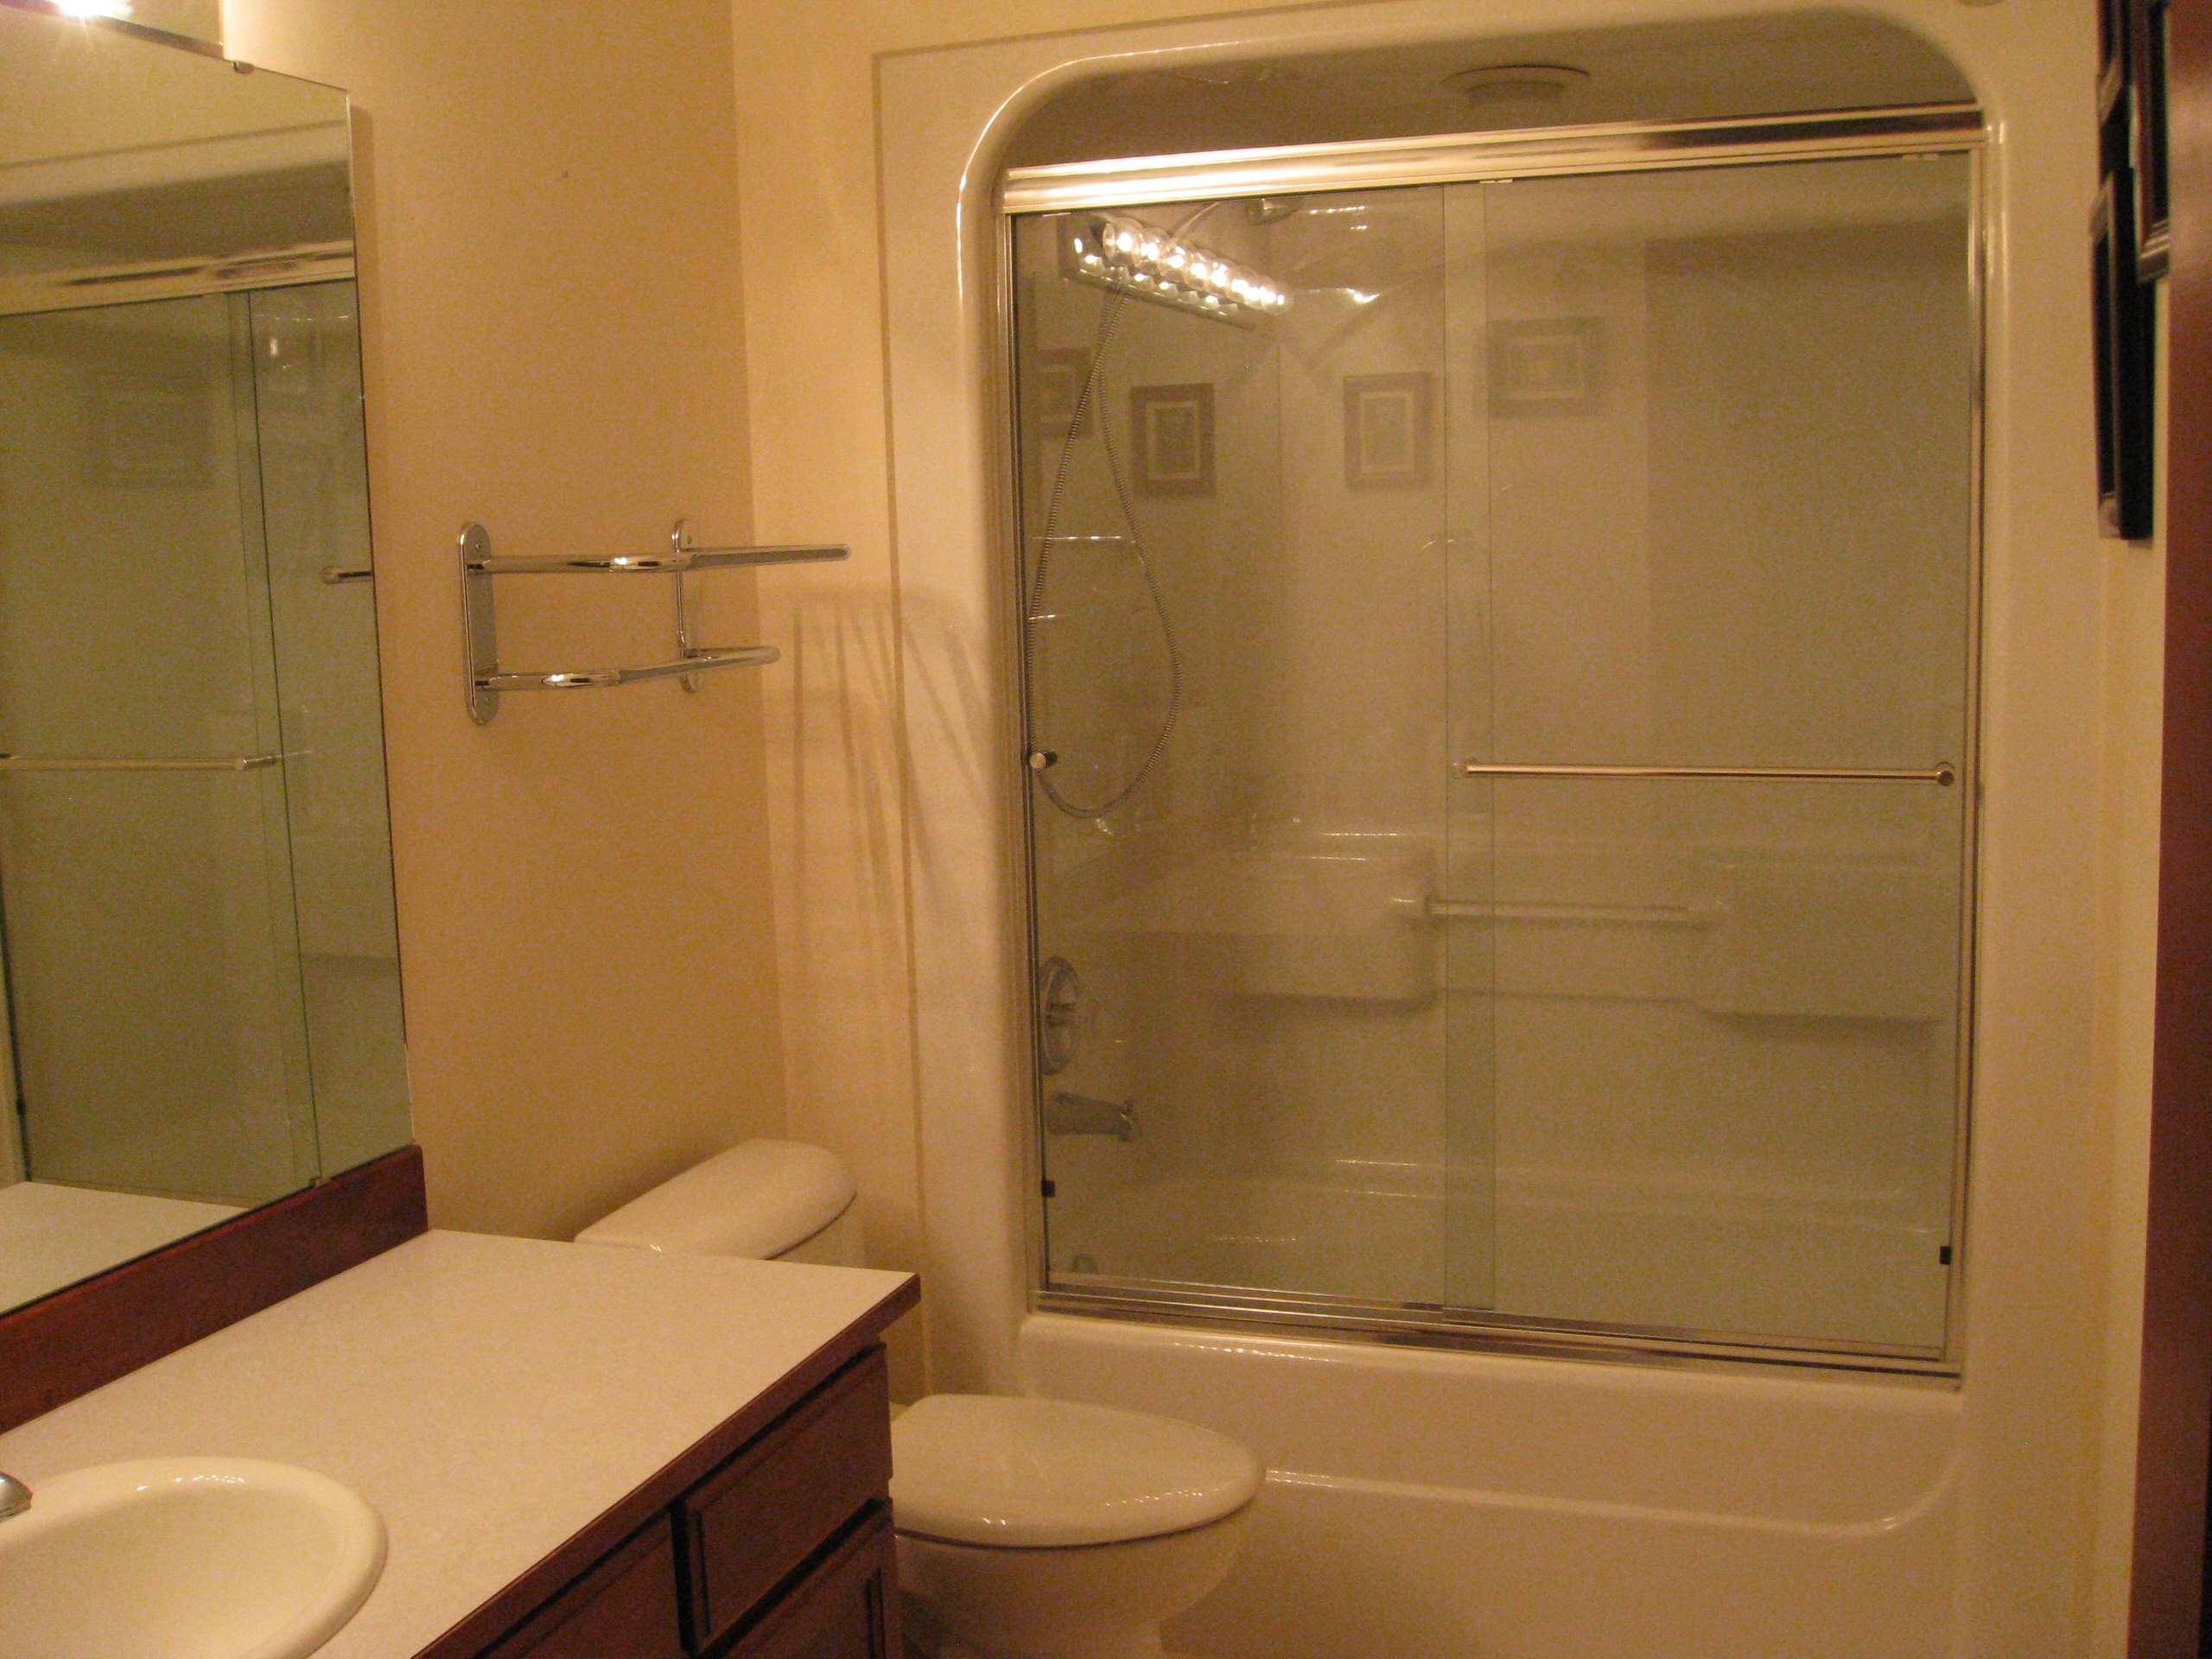 One Piece Tub Shower Unit Houzz, One Piece Bathtub Surround